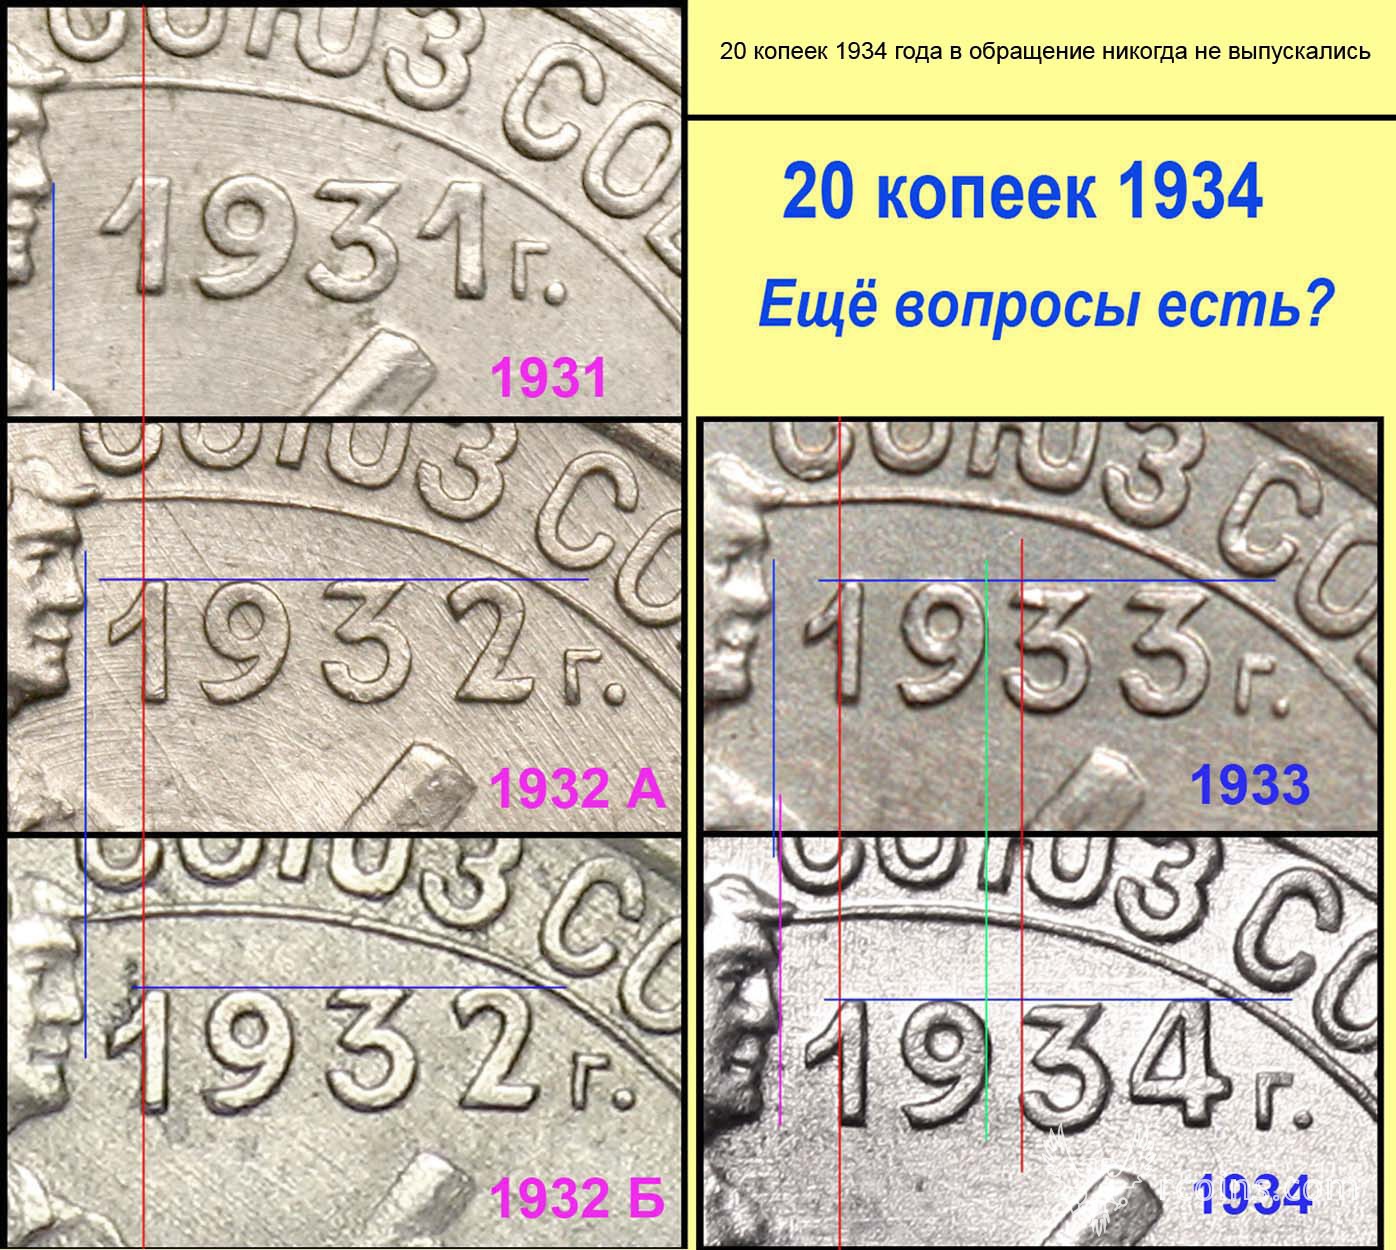 20 копеек 1931-34 фрагменты.jpg